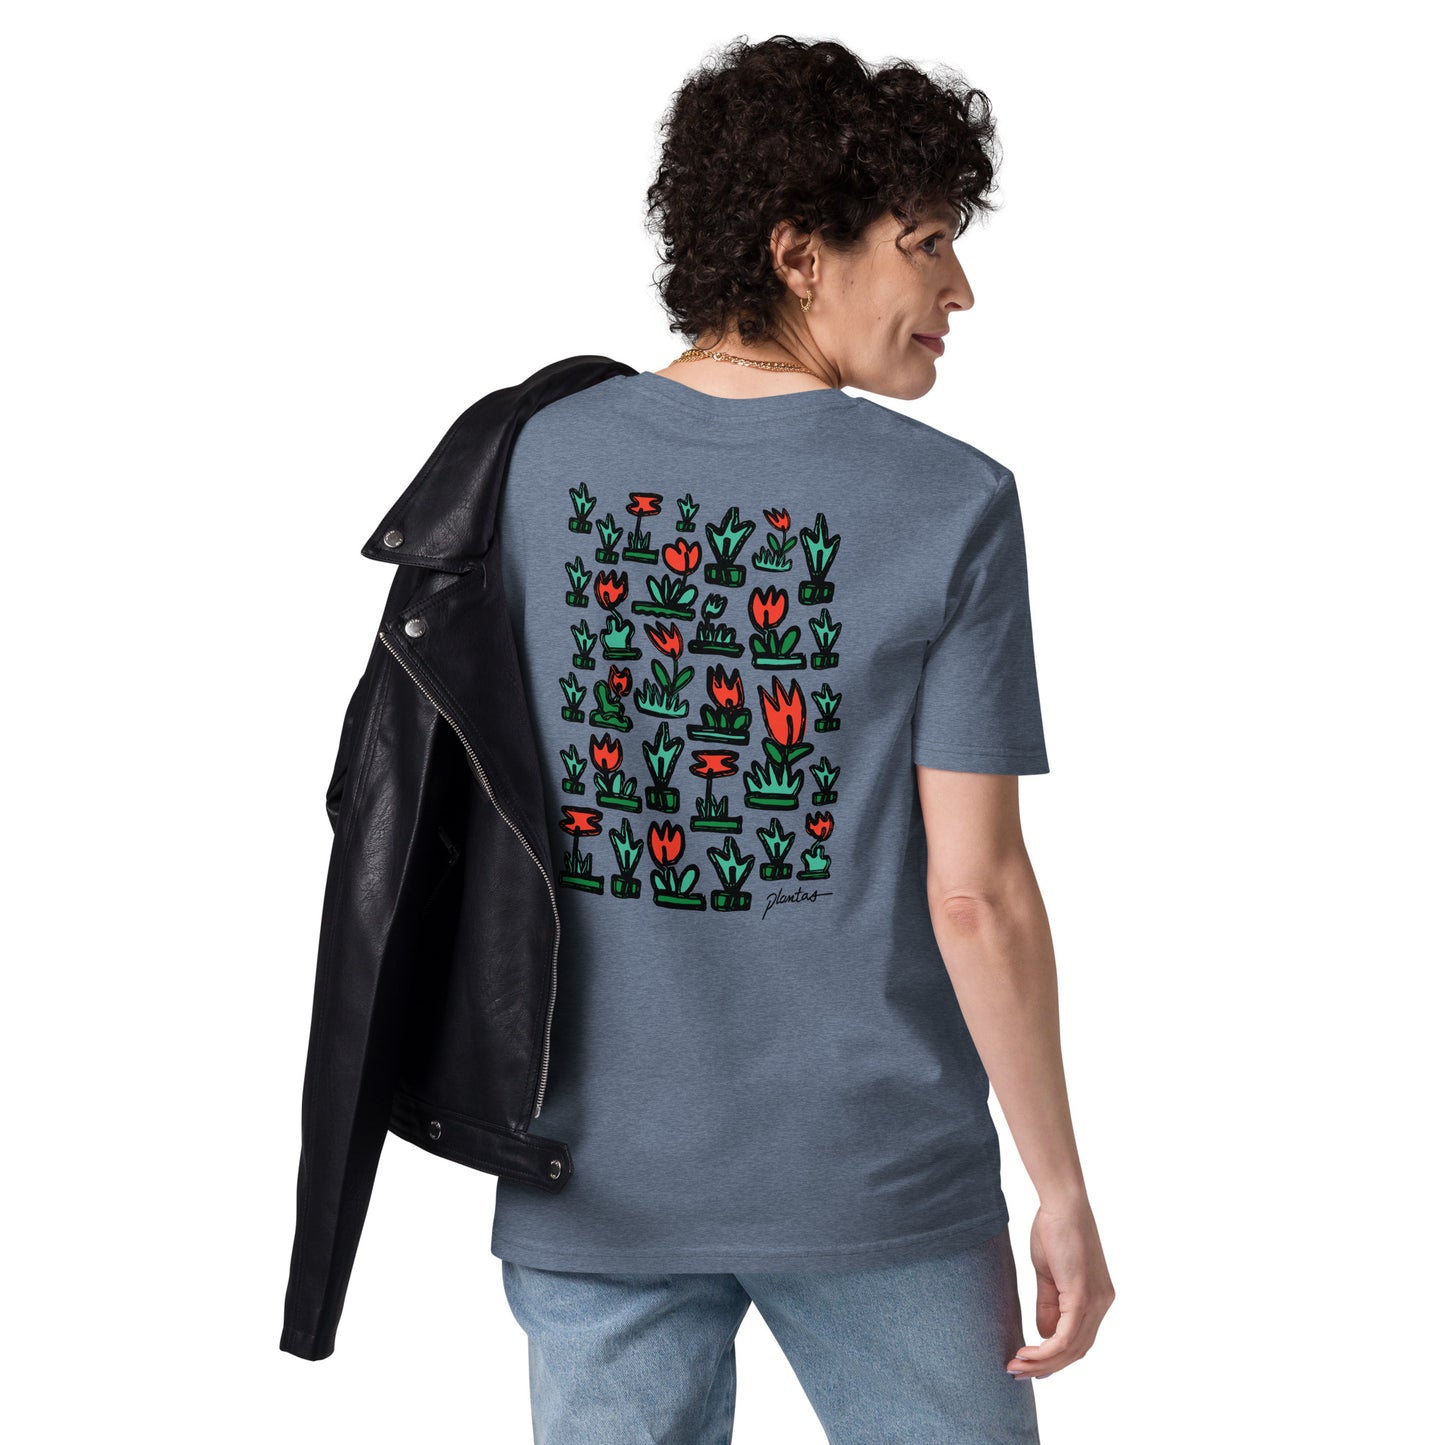 Doodle unisex organic cotton t-shirt